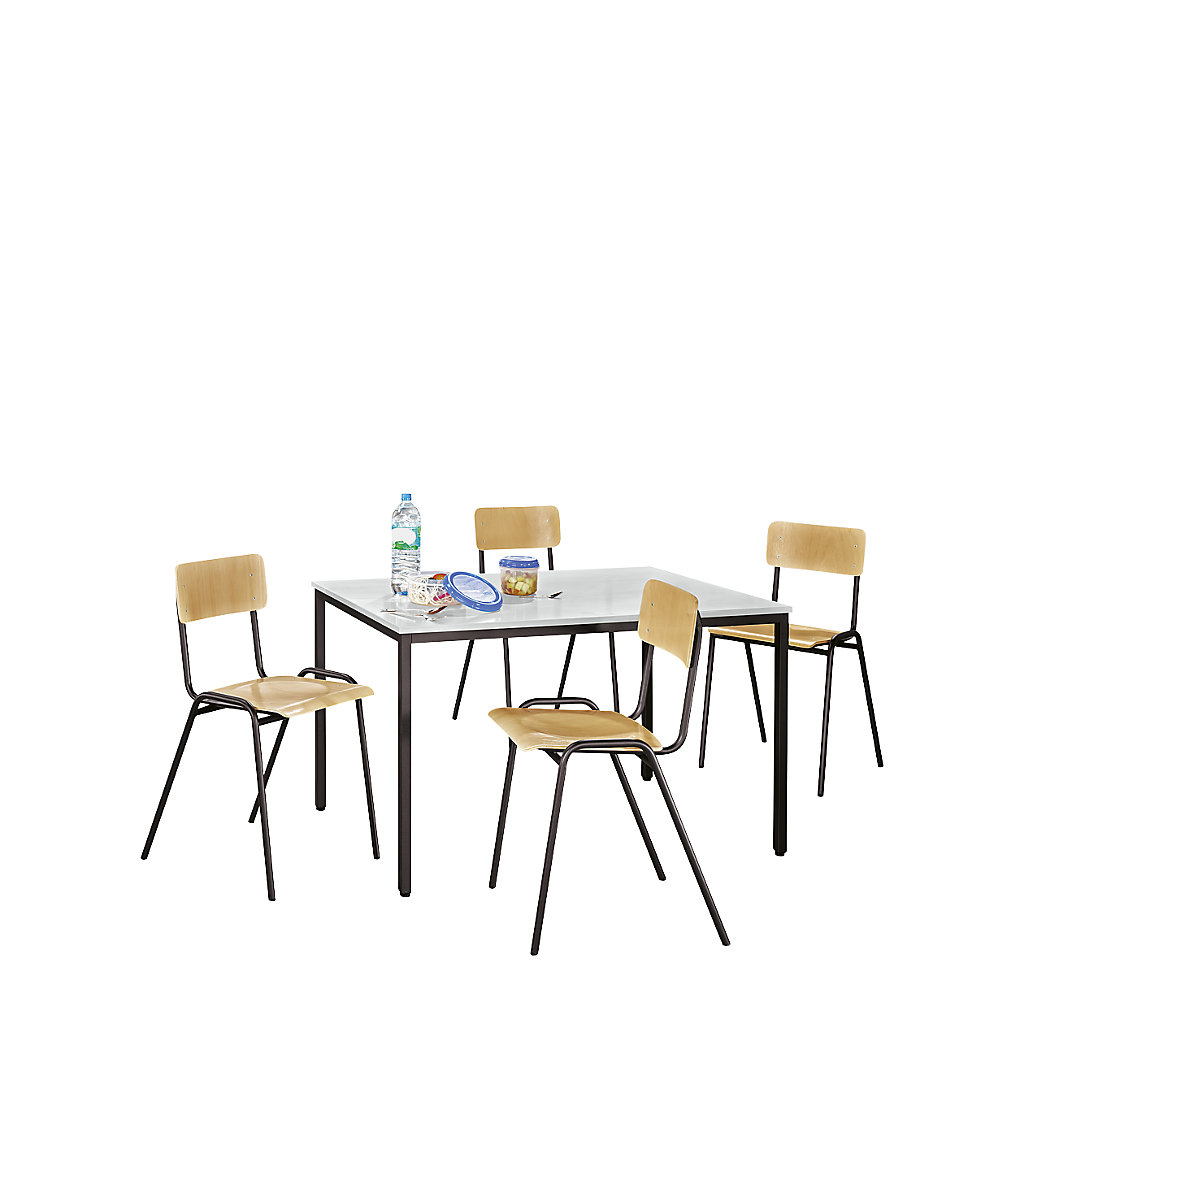 EUROKRAFTbasic – Uniwersalny zestaw mebli do siedzenia, 1 stół, 4 krzesła, blat jasnoszary, szkielet szarobrązowy